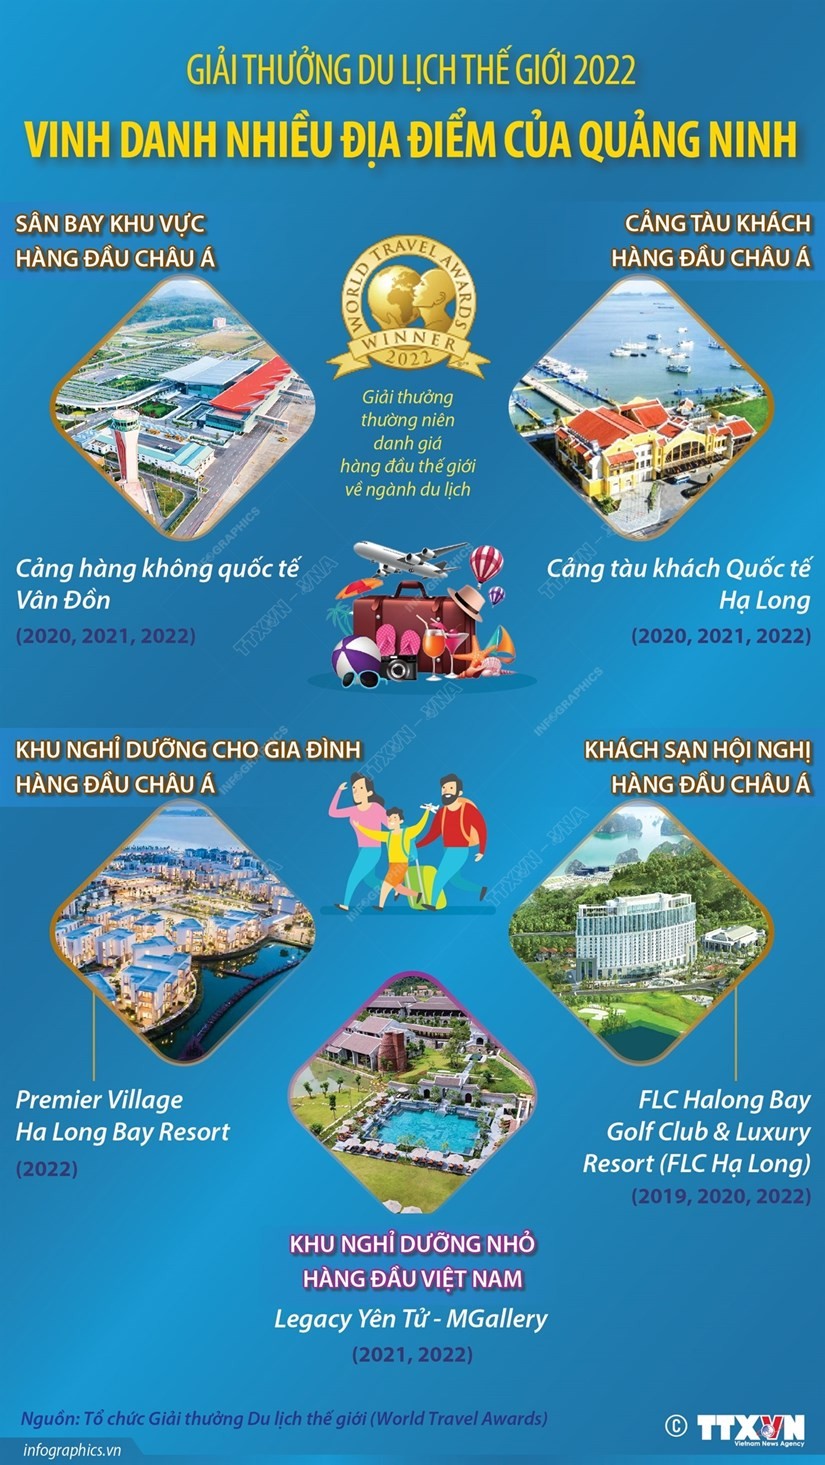 Giải thưởng Du lịch Thế giới vinh danh nhiều địa điểm của Quảng Ninh | Điểm đến | Vietnam+ (VietnamPlus)